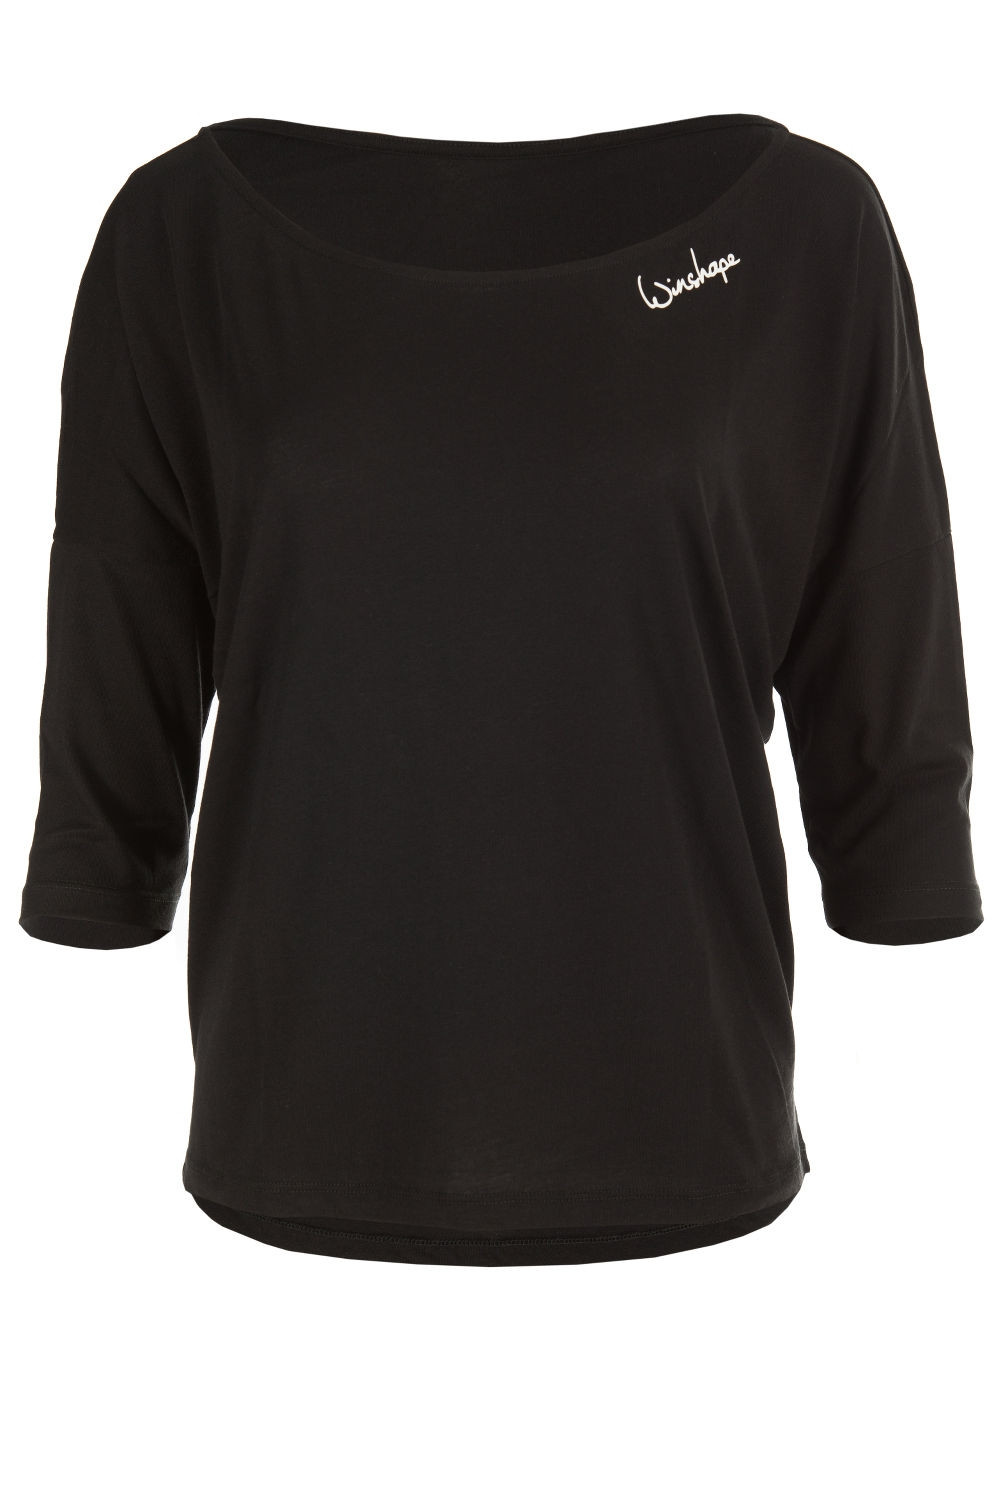 Ultra Winshape MCS001, Dance Style Shirt leichtes schwarz, Modal-3/4-Arm